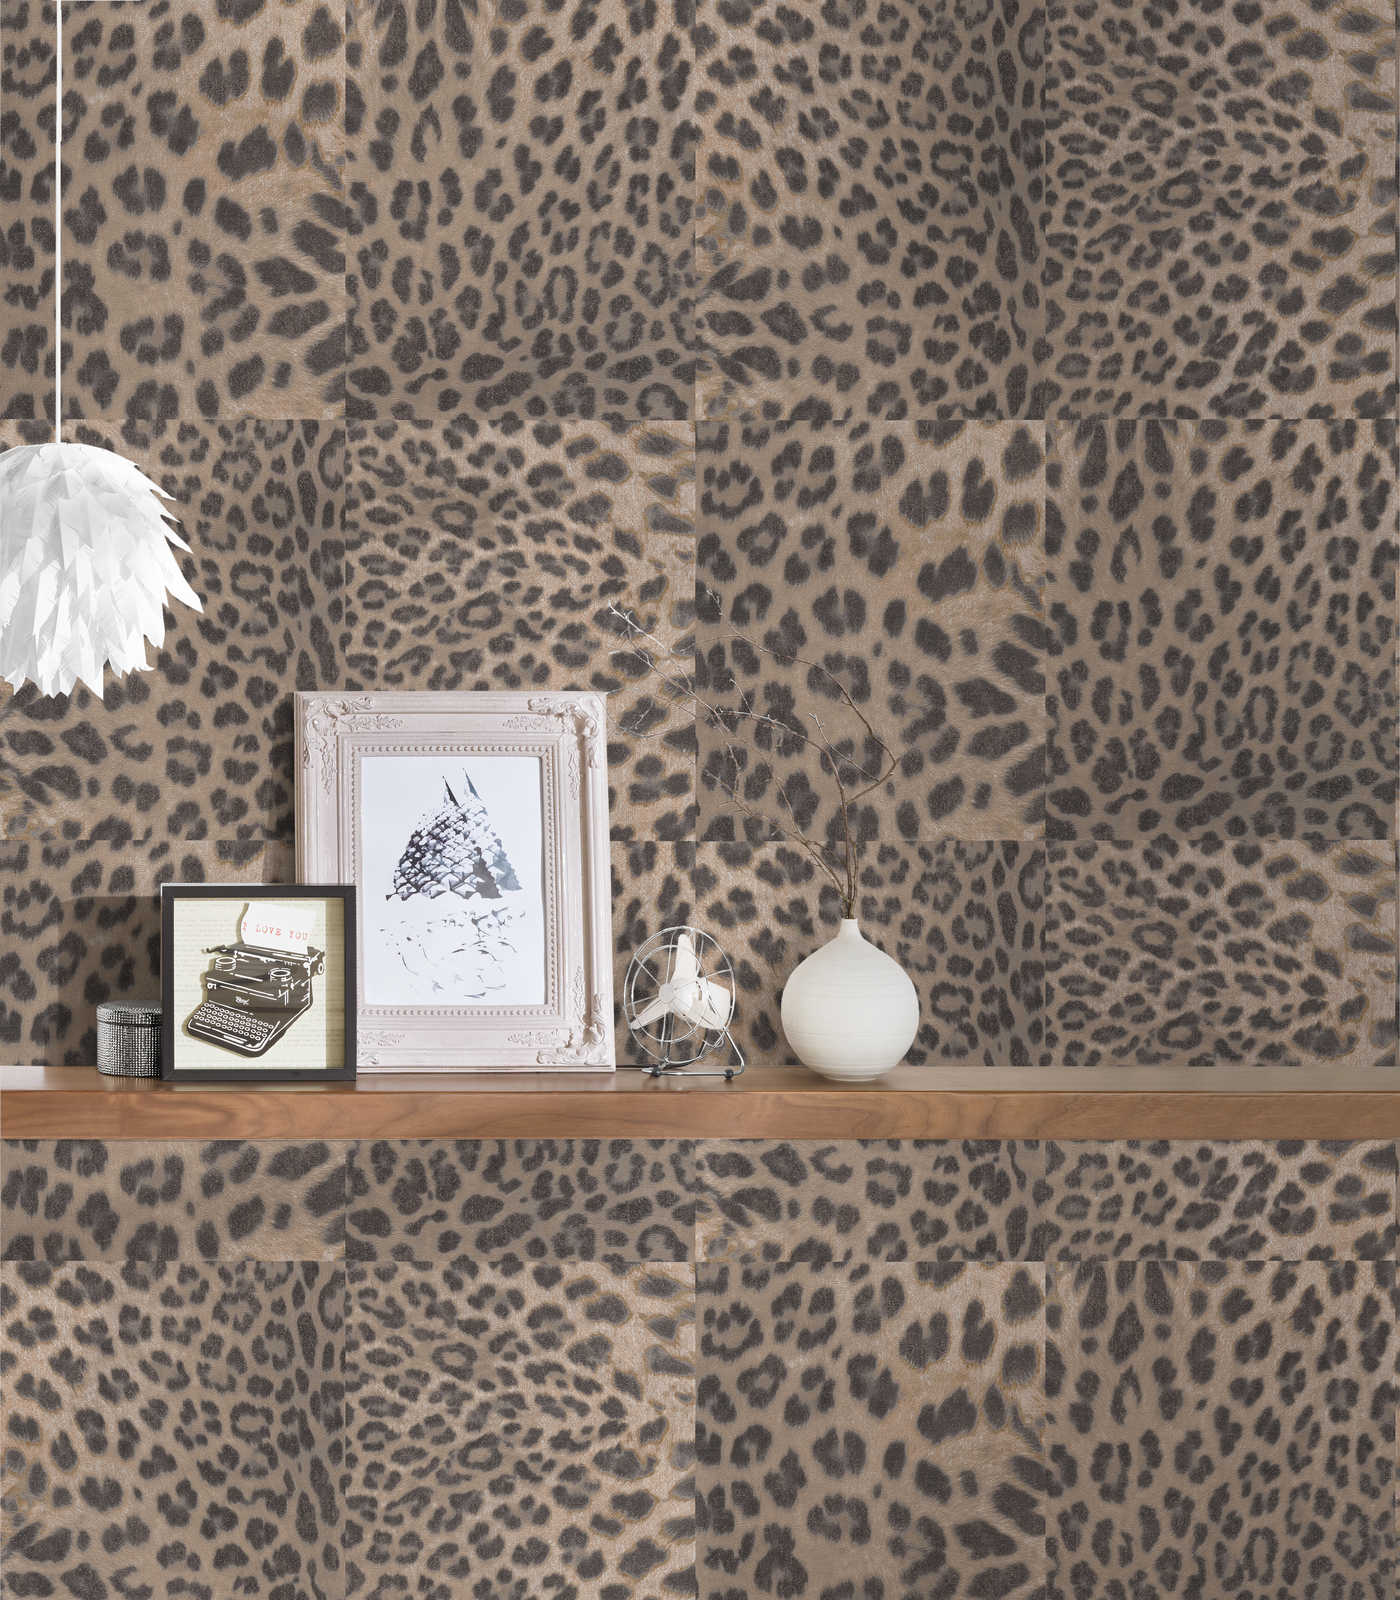             Papel pintado con estampado de animales y leopardo - Beige, Gris
        